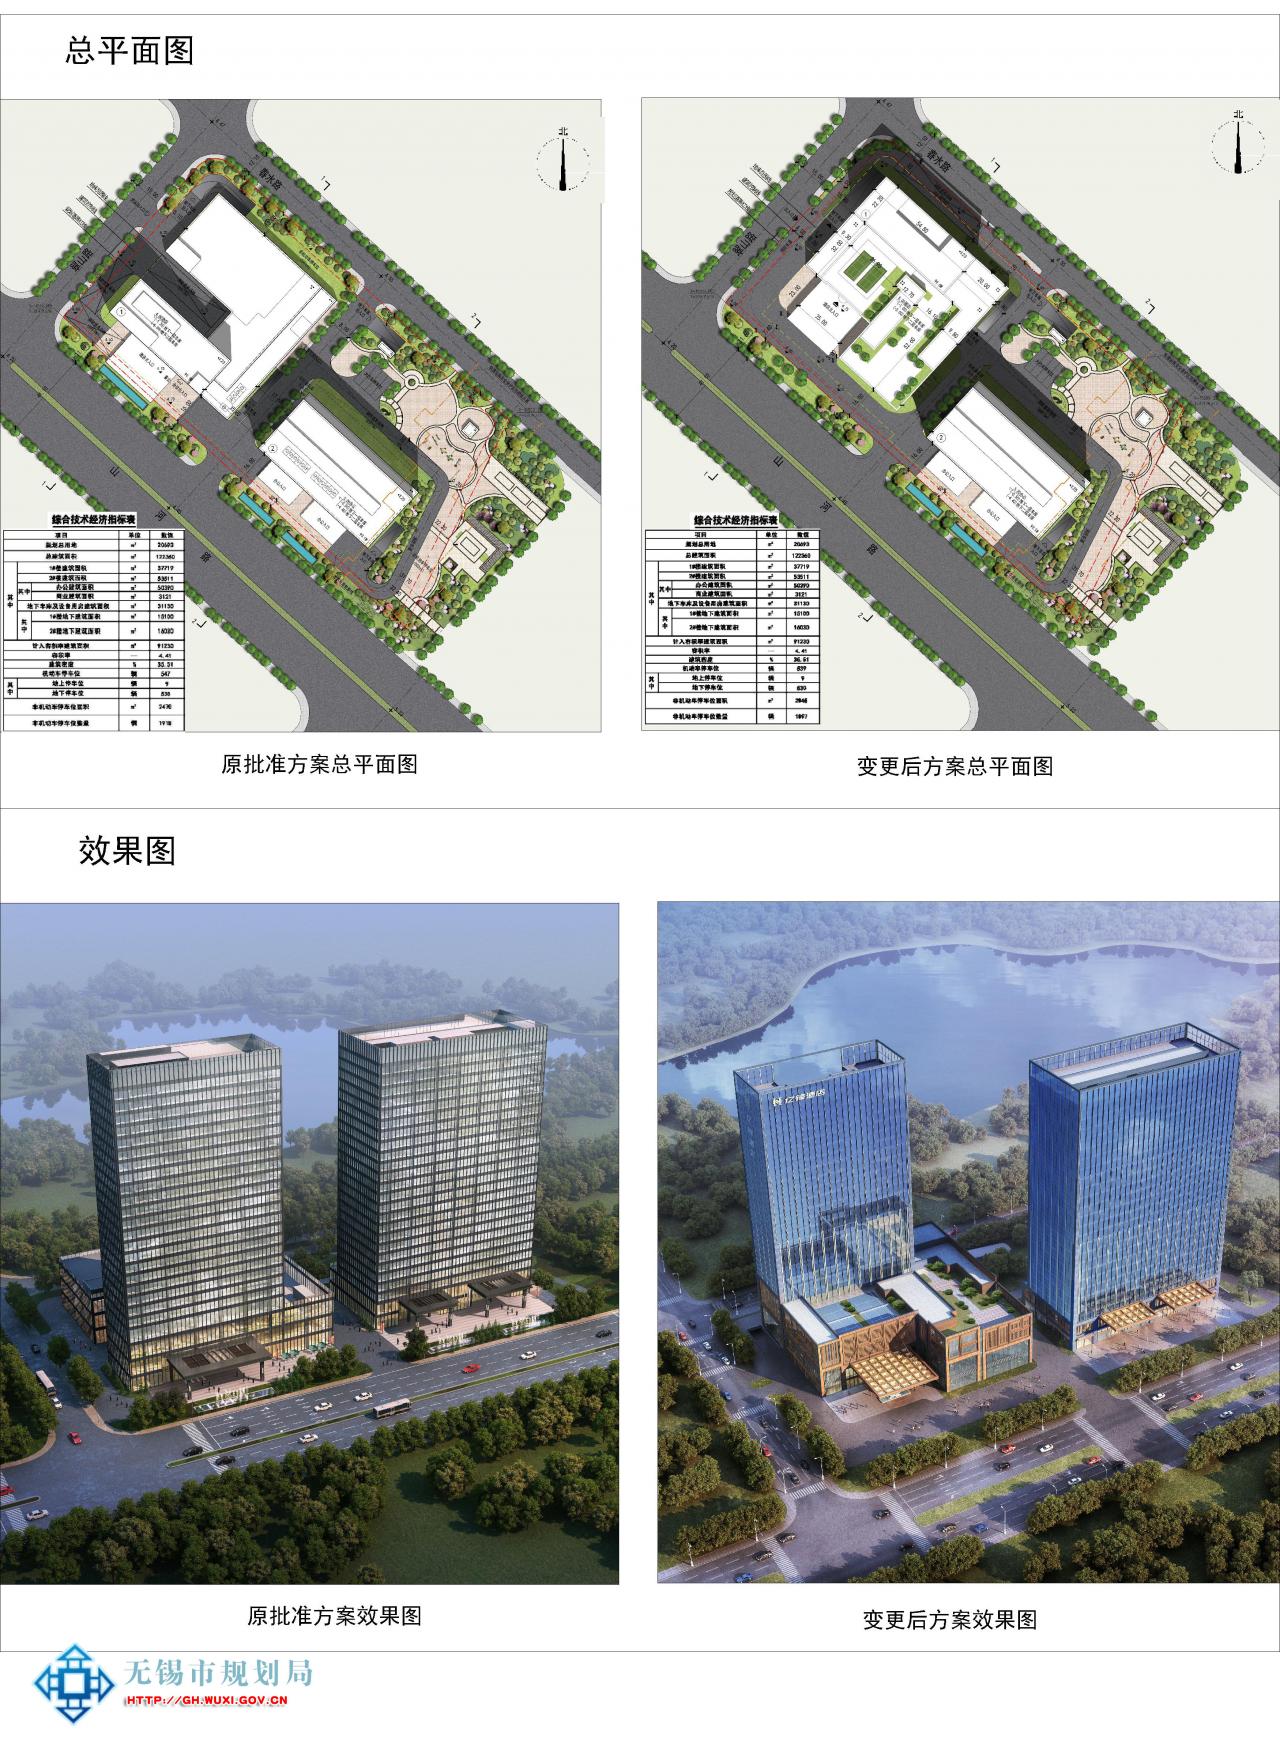 无锡盈华置业有限公司XDG-2015-19号地块开发项目规划设计方案变更批前公示